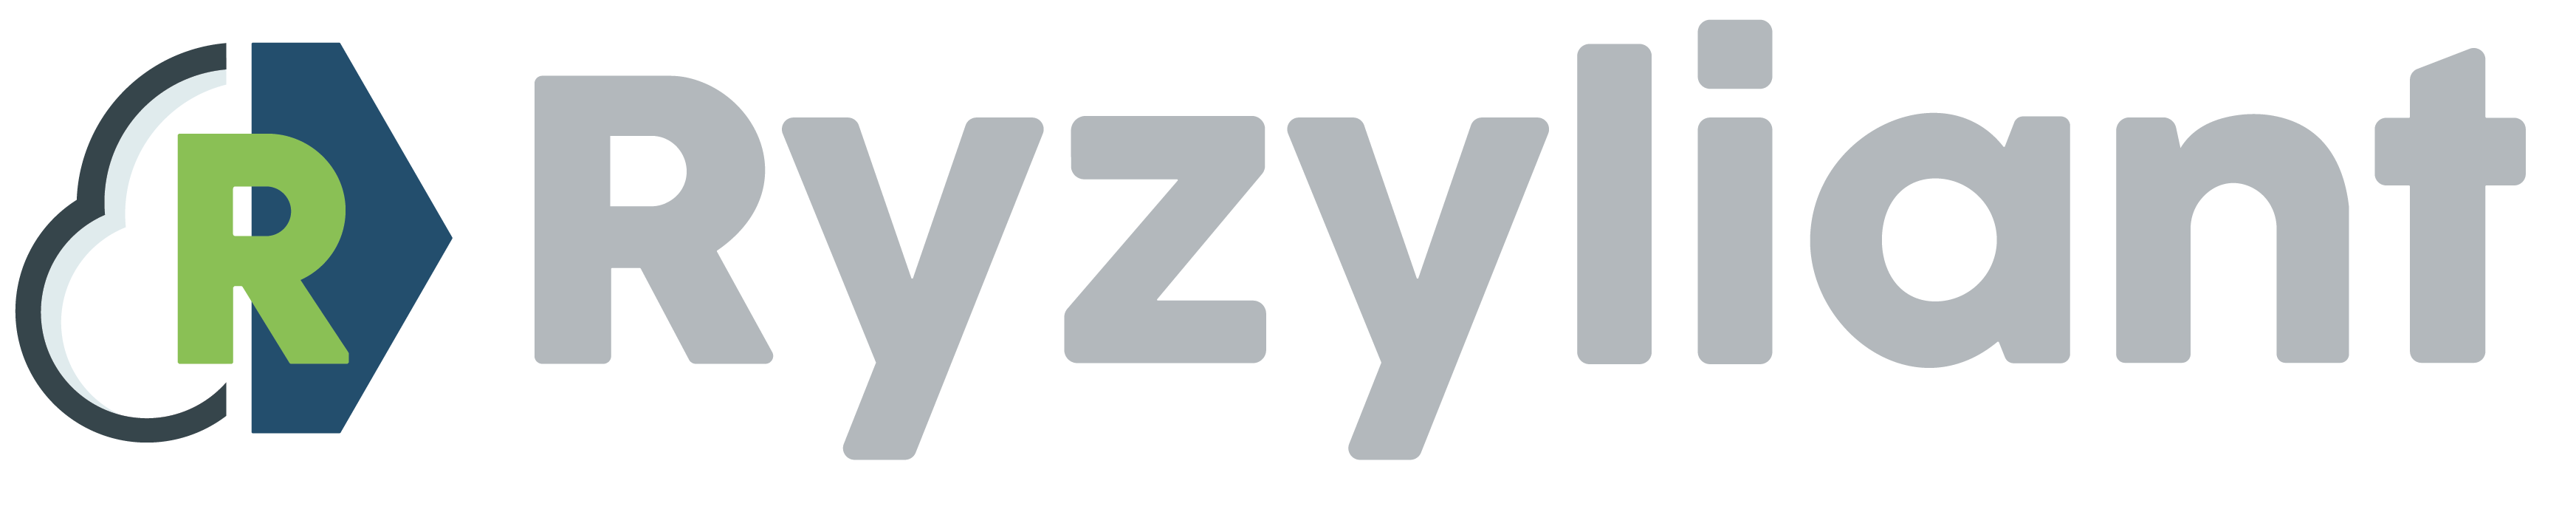 Ryzyliant, Inc.